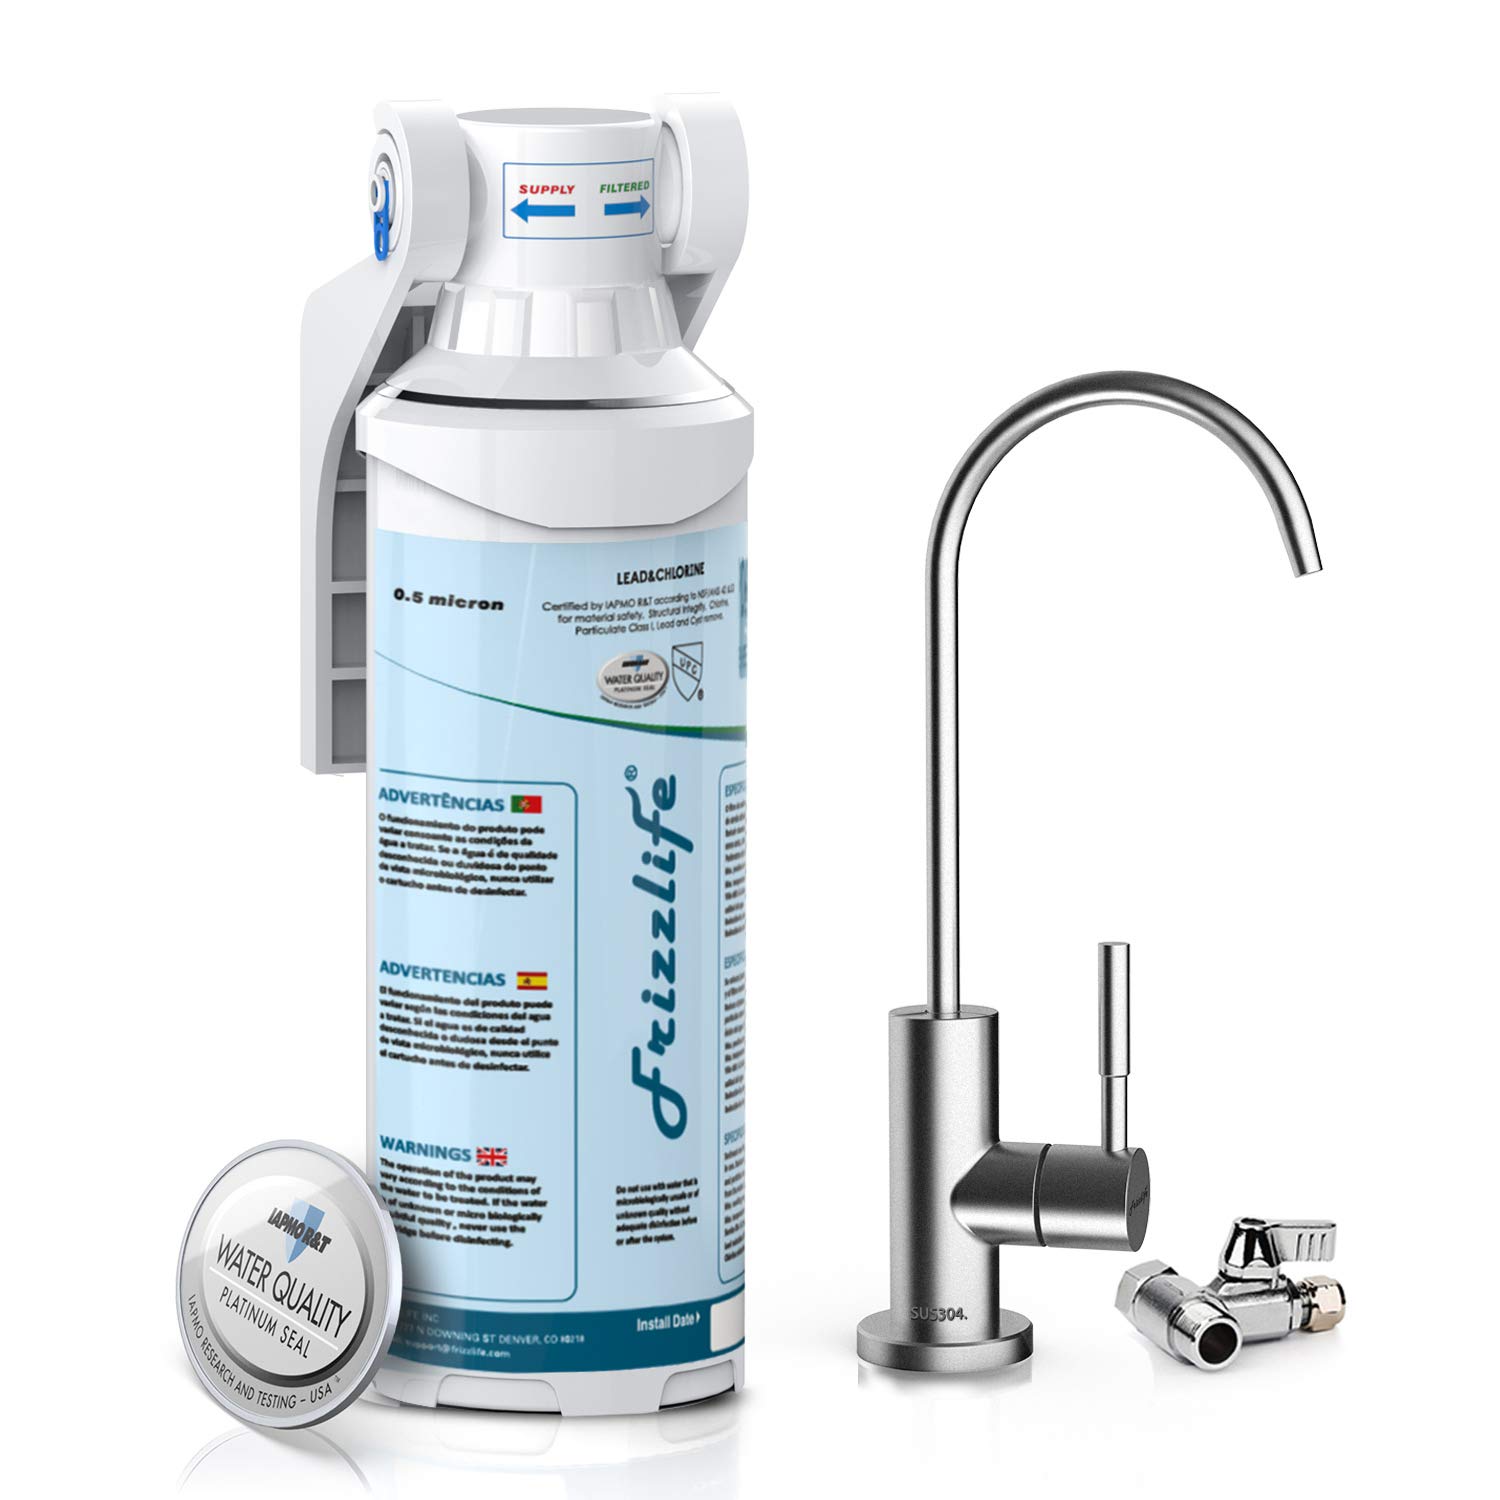 Sistema de filtración de agua de 4,7 litros Libre de BPA y certificado para Reducir el Plomo y Otros Metales Pesados con Medidor de Calidad de Agua Gratis Cartucho de Filtro de Agua Incluido 